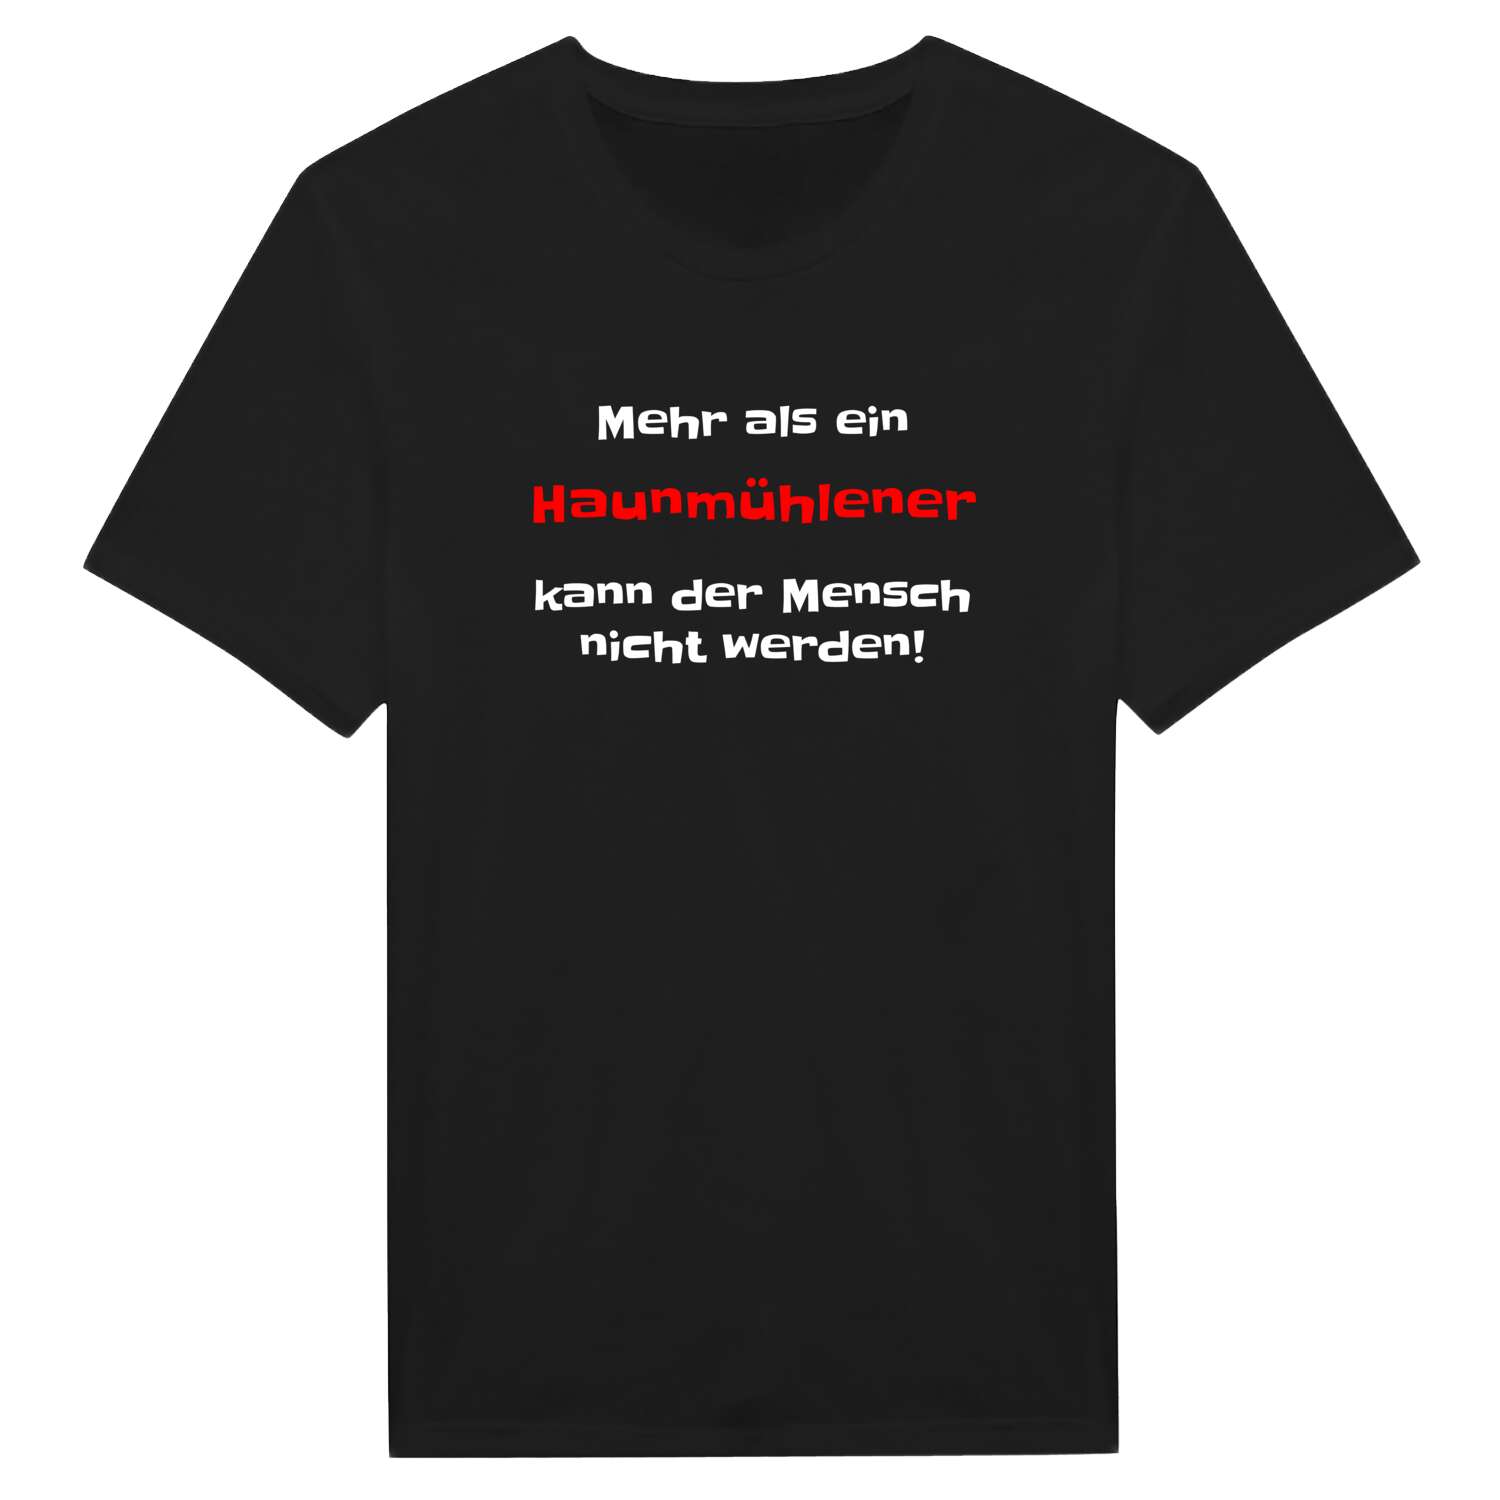 Haunmühle T-Shirt »Mehr als ein«